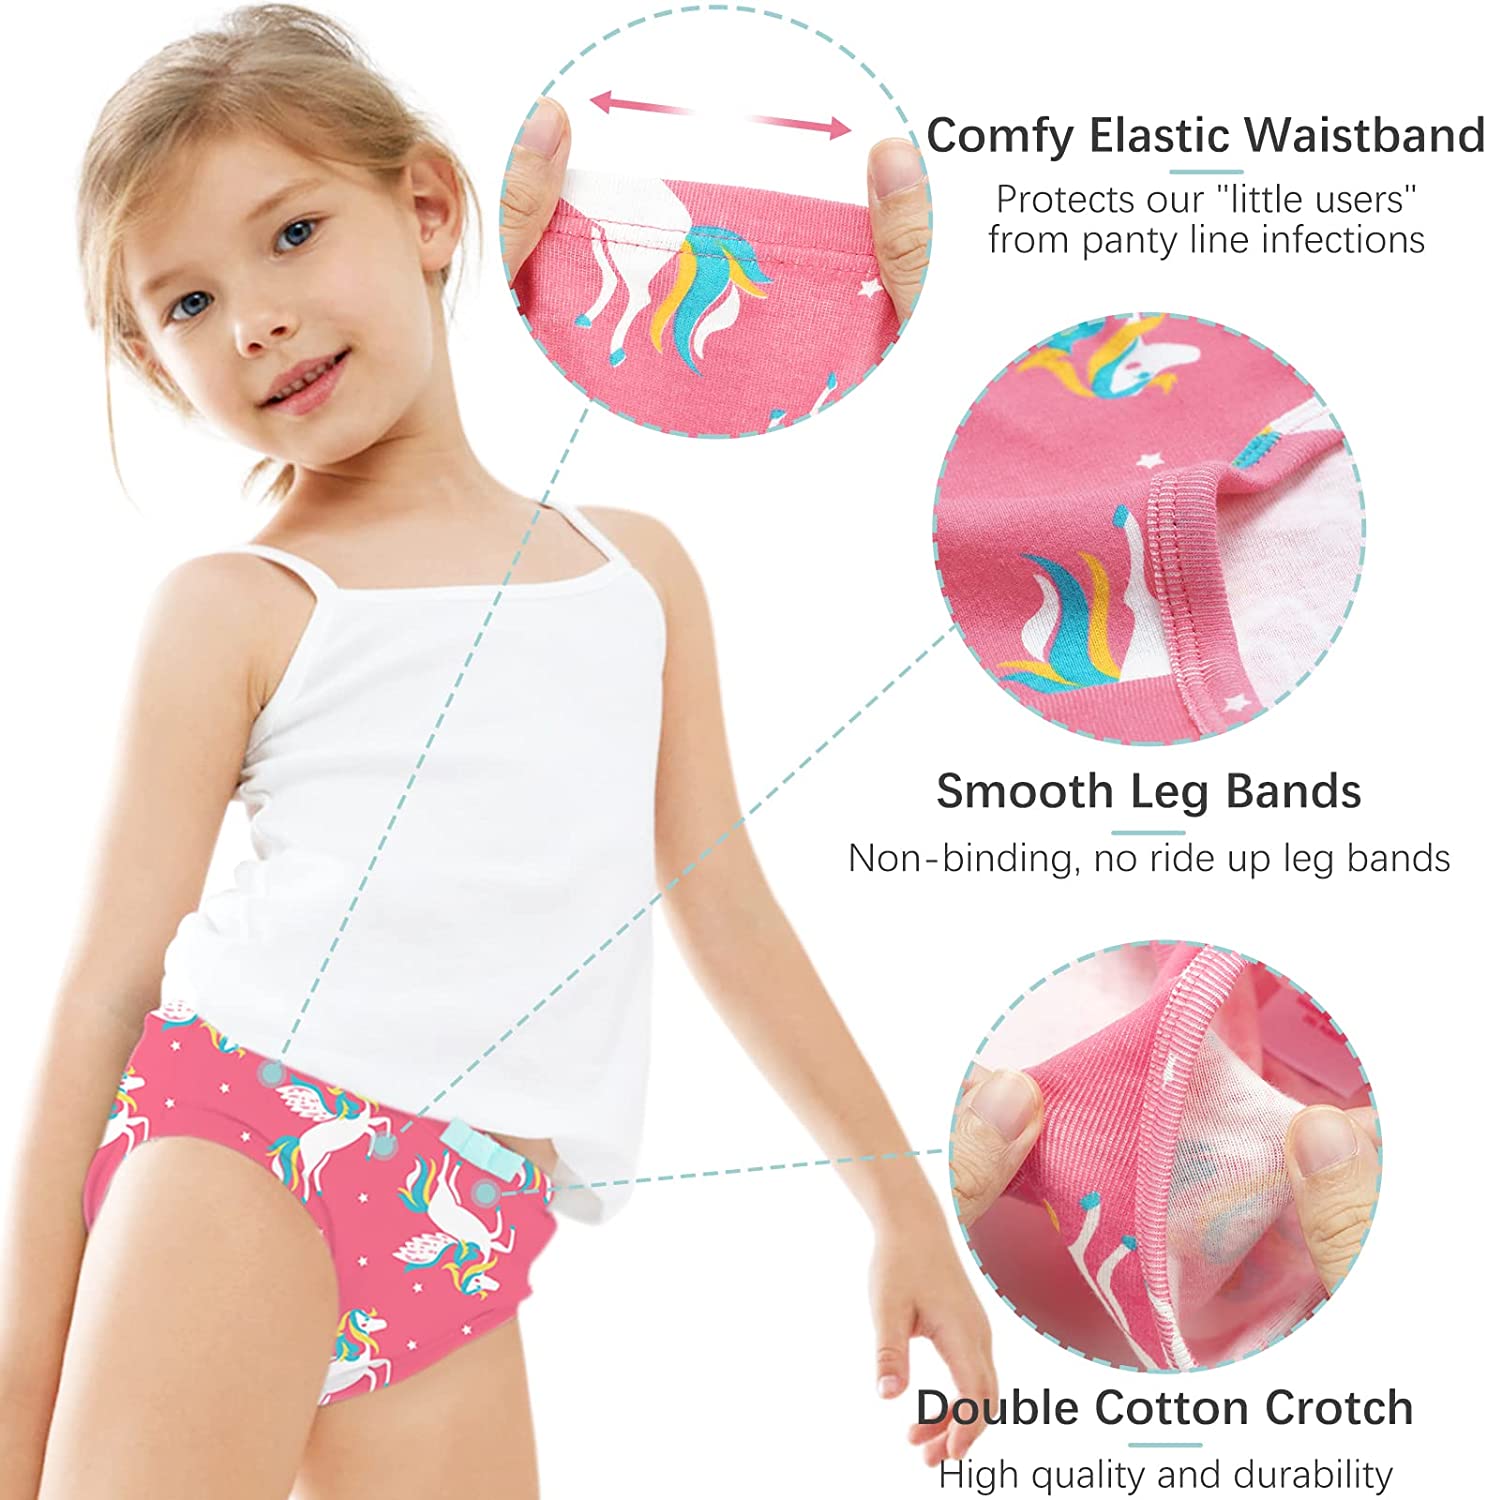 Pink/Black 7-Pack Unicorn Print Stretch Cotton Underwear